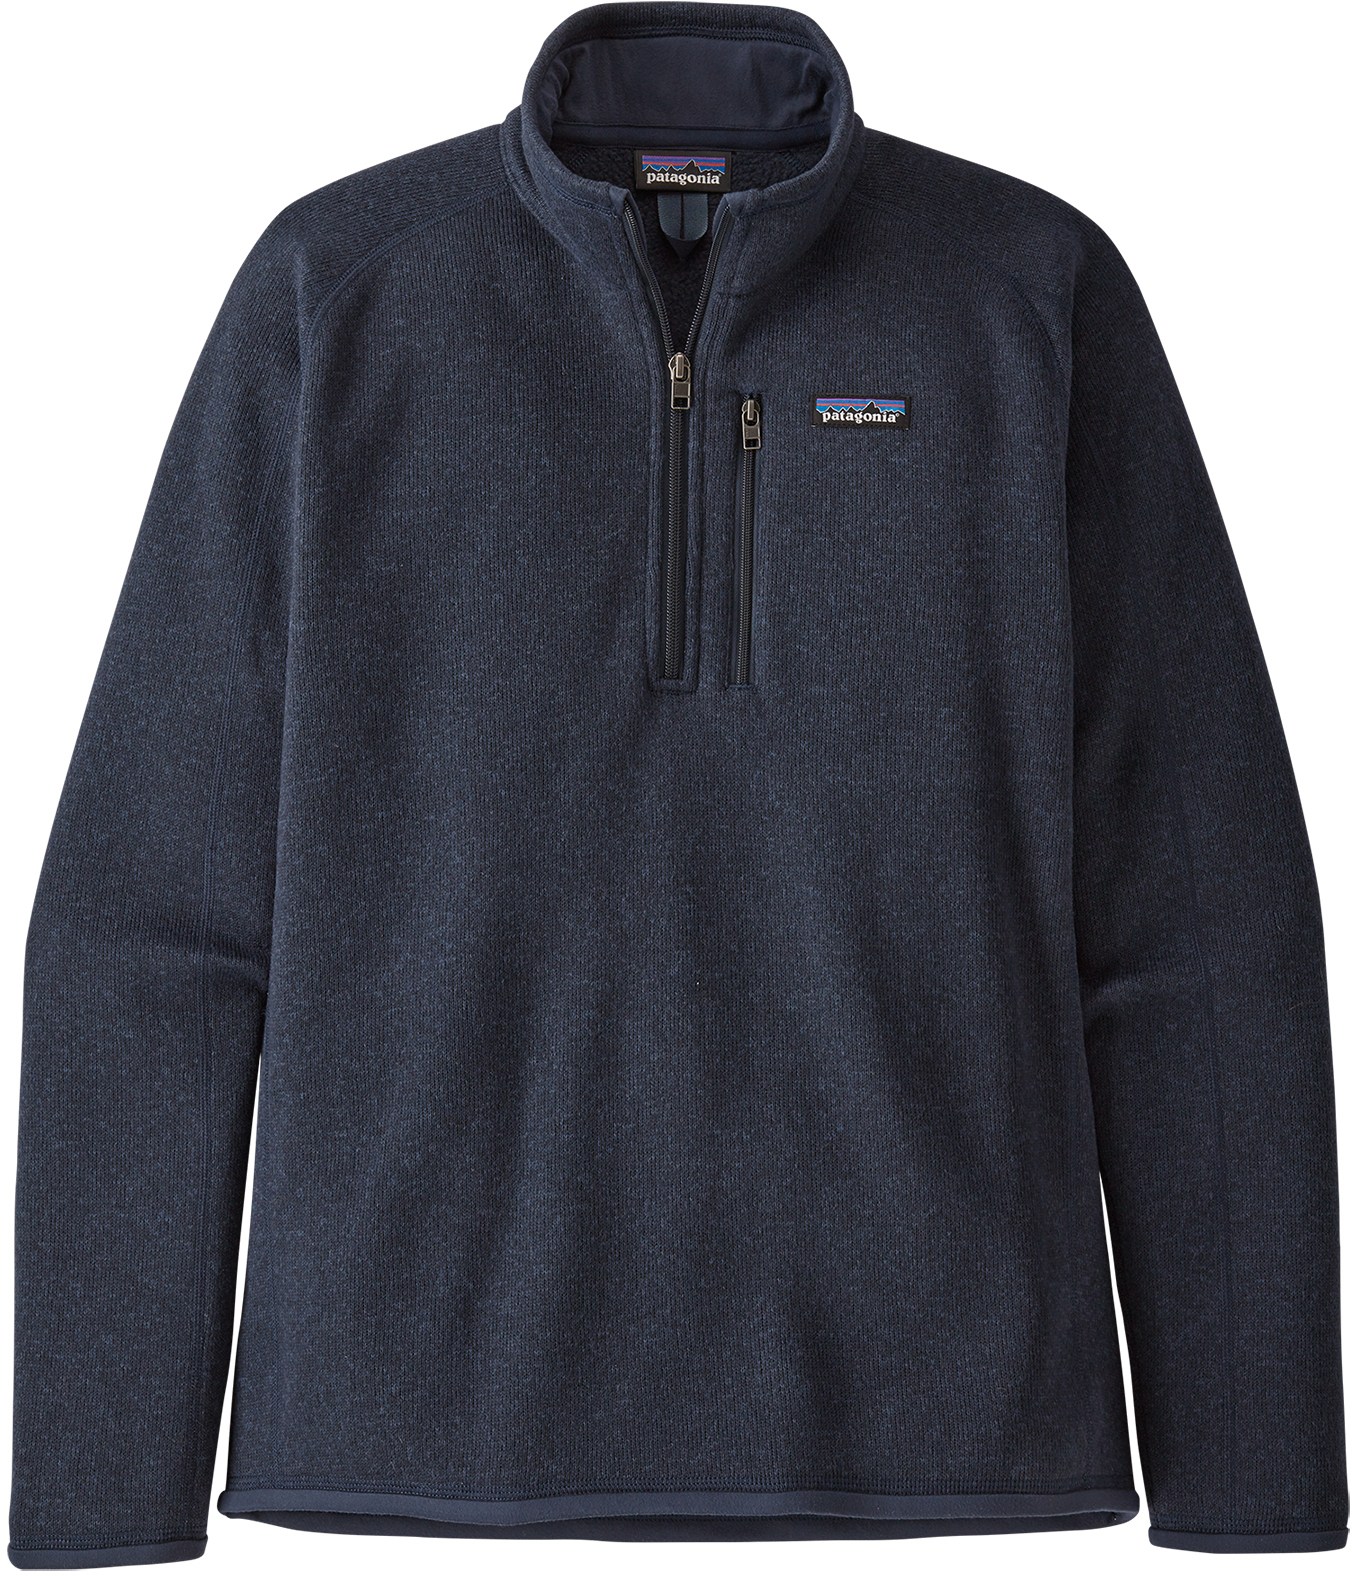 Флисовый пуловер Better Sweater с молнией в четверть — мужской Patagonia, синий